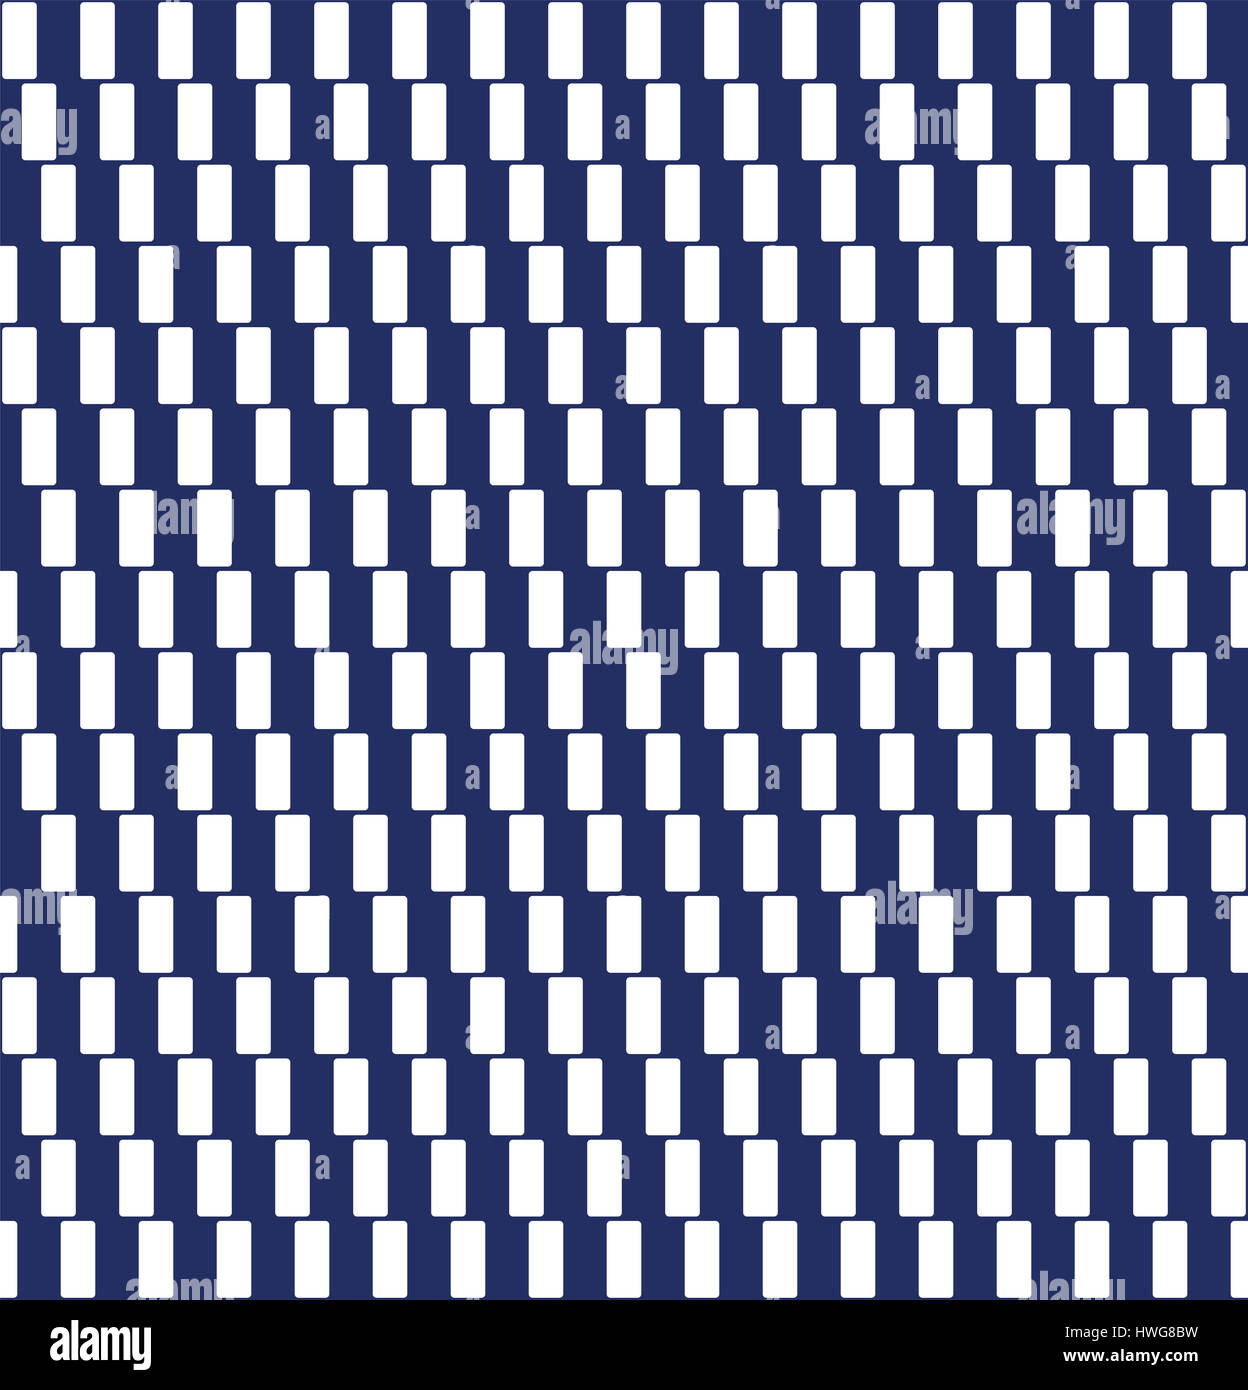 Muster mit Café Wand optische Täuschung. Fliese. Nahtlos in alle Richtungen. Geometrische Illusion. Linien durch weißen Rechtecken gebildet scheinen geneigt werden. Stockfoto